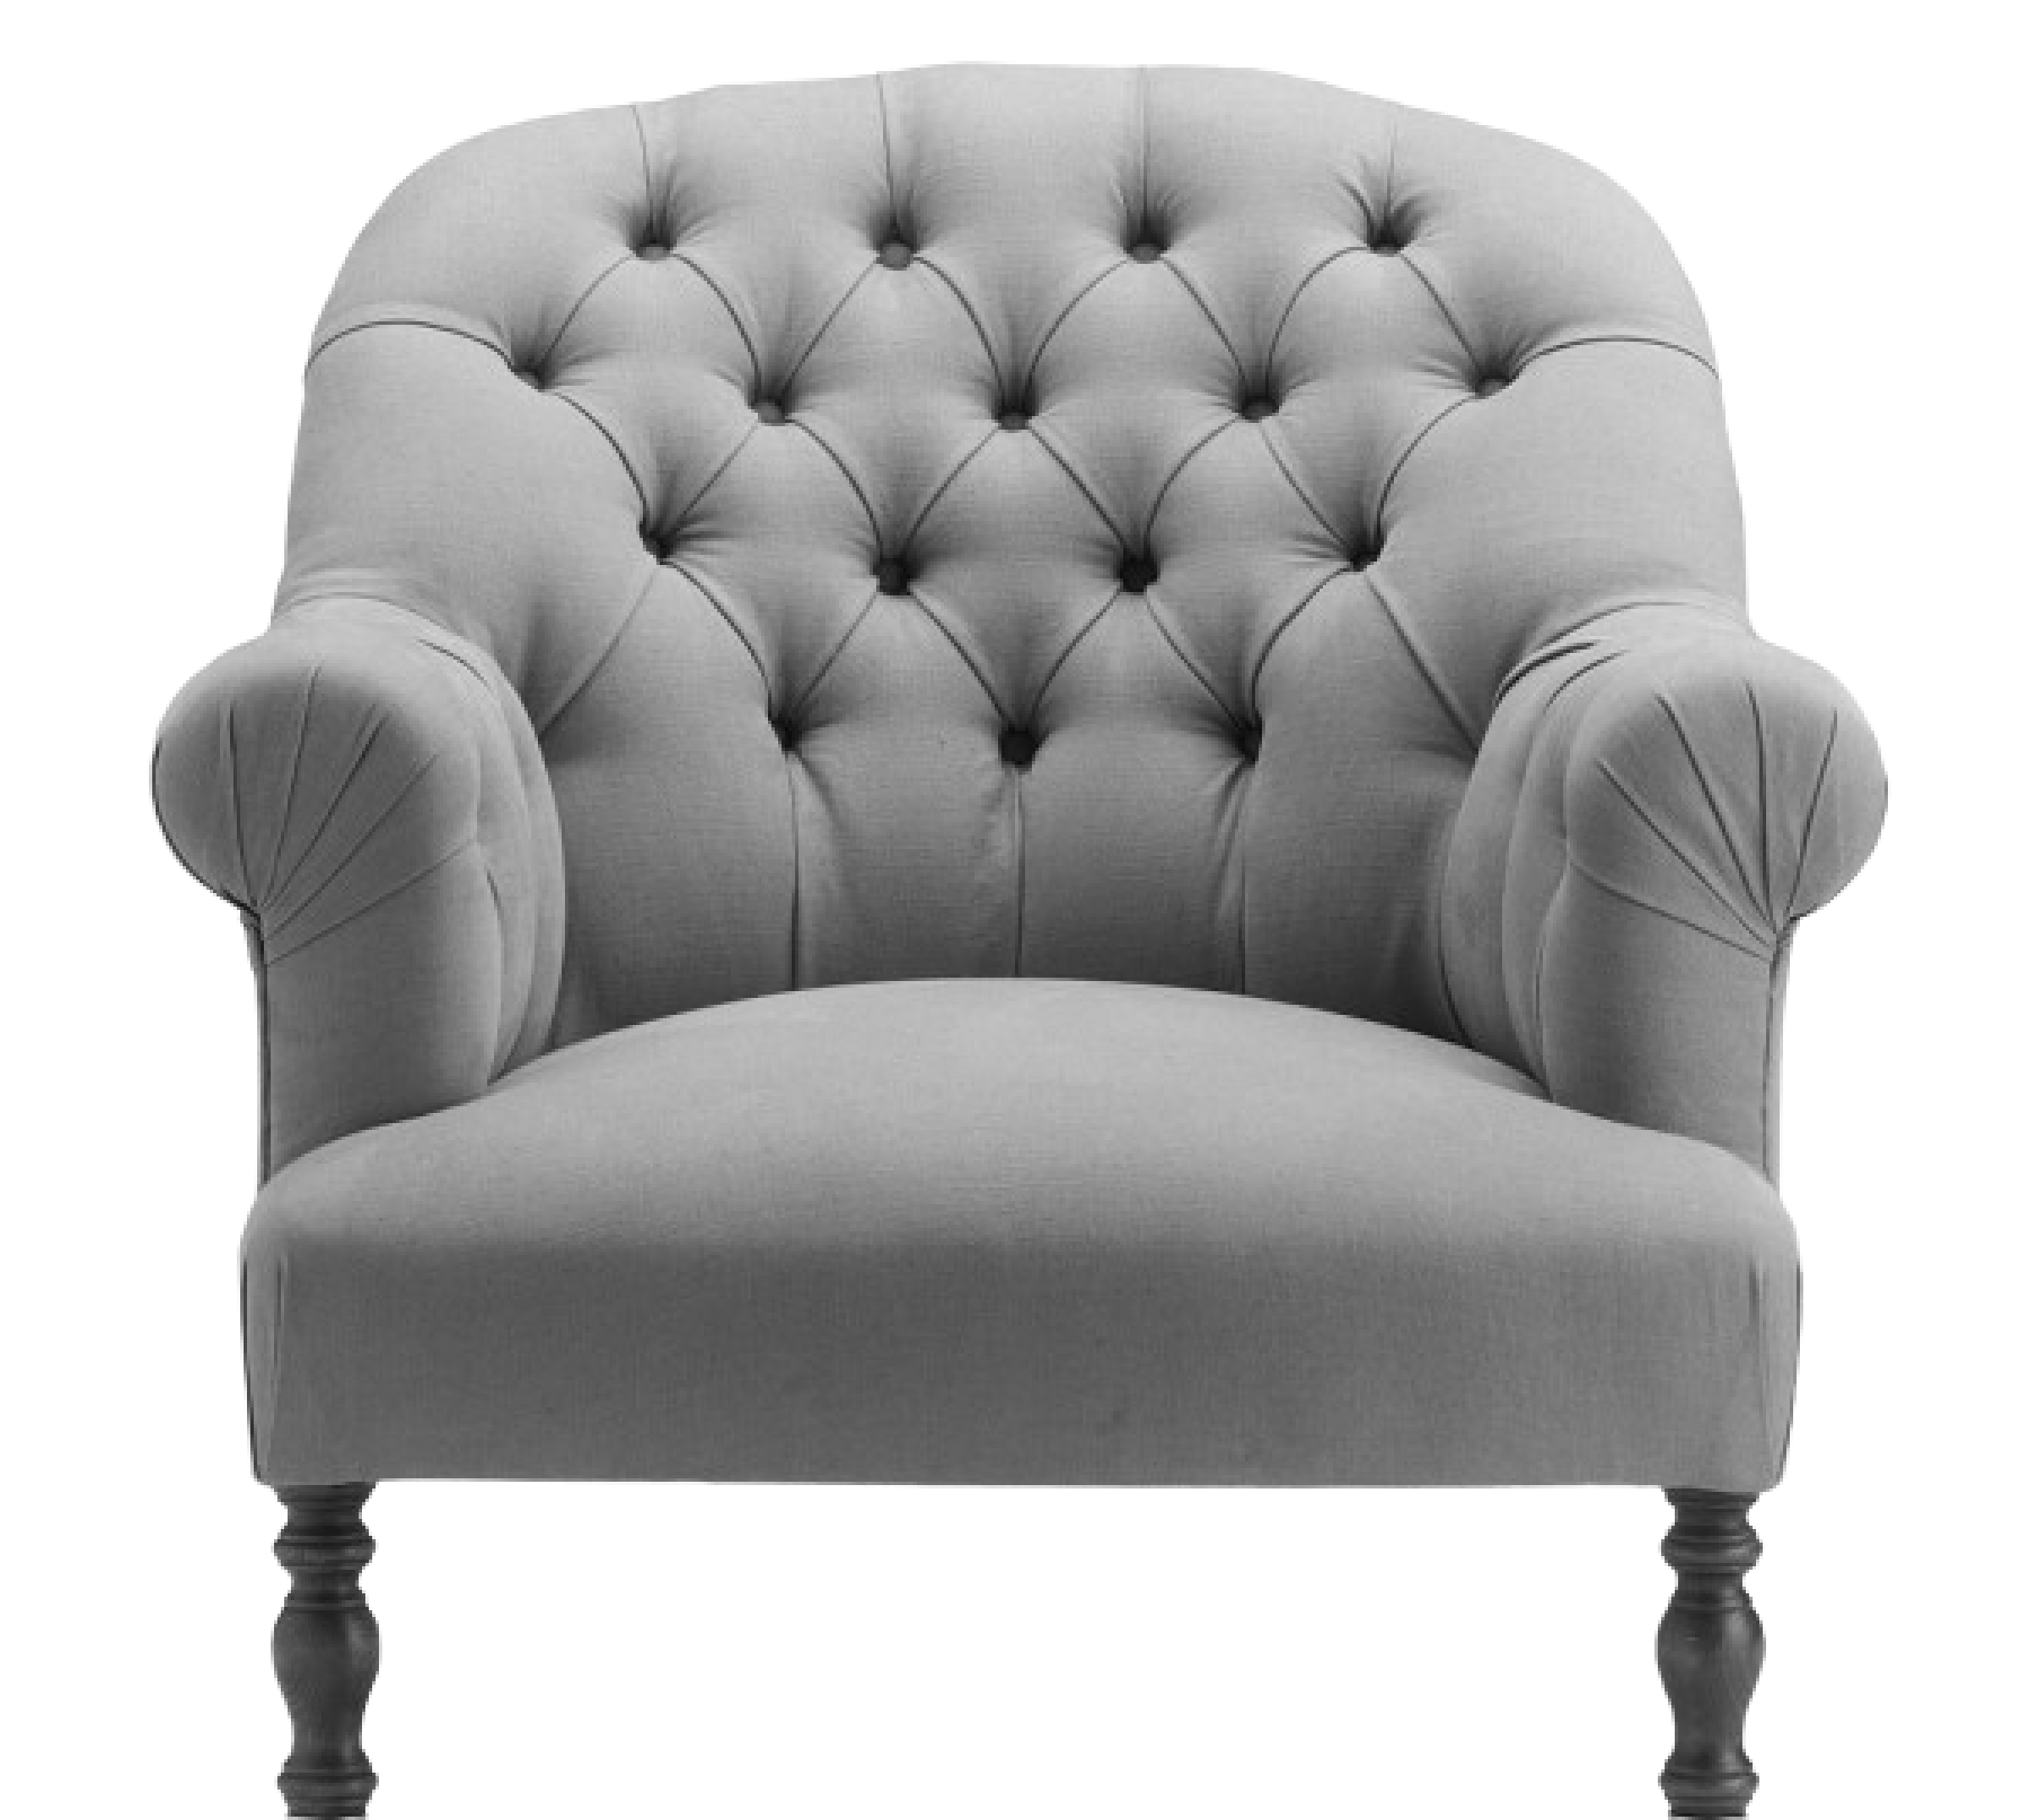 Кресло с мягкой обивкой. Кресло Честерфилд с высокой спинкой. Кресло Neoclassical Armchair.